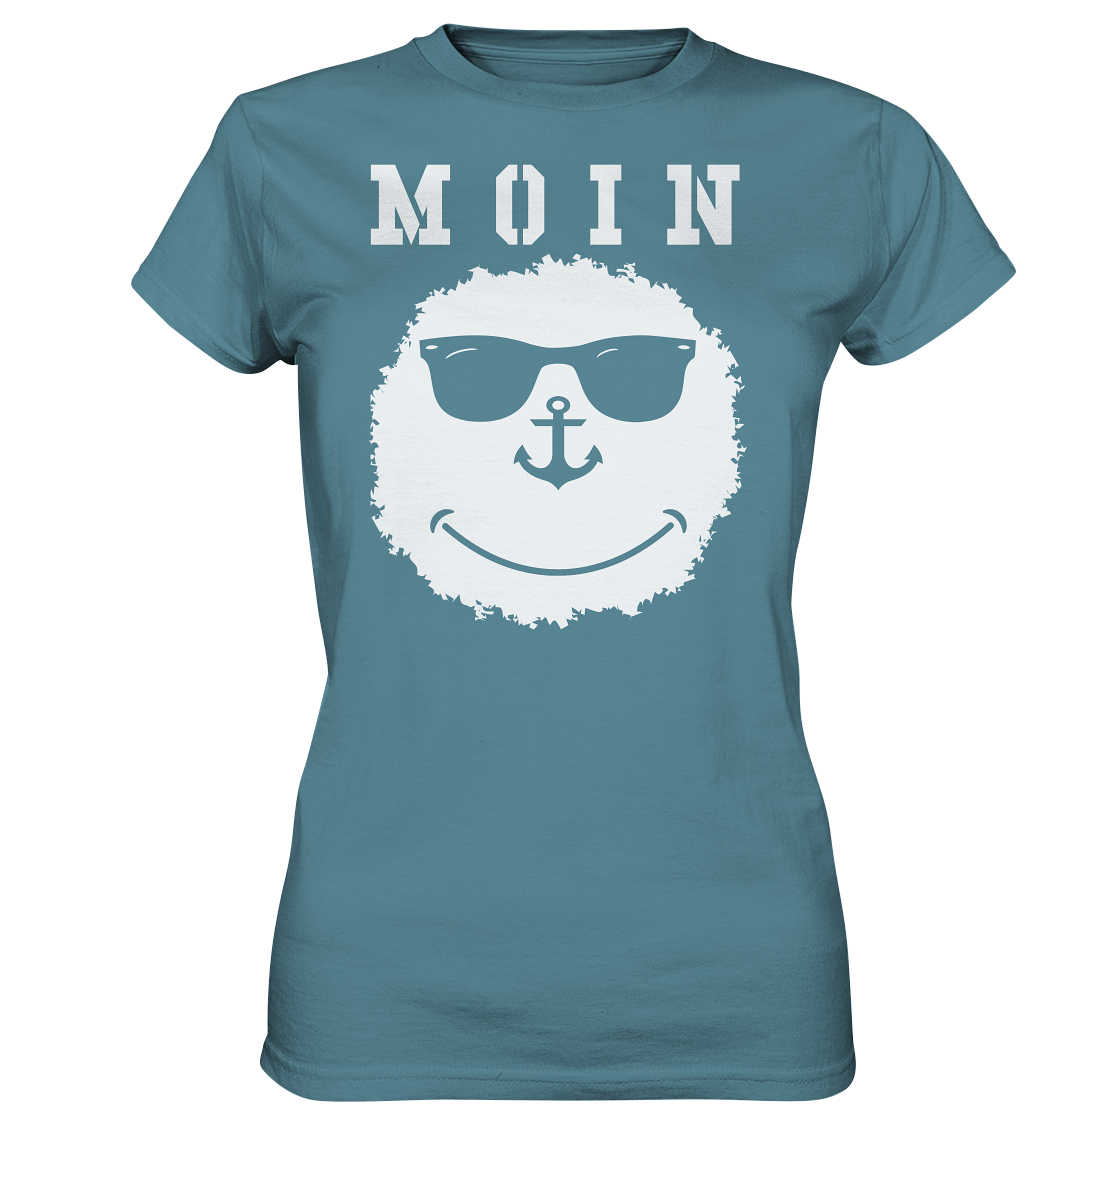 Smily MOIN - Ladies Premium Shirt